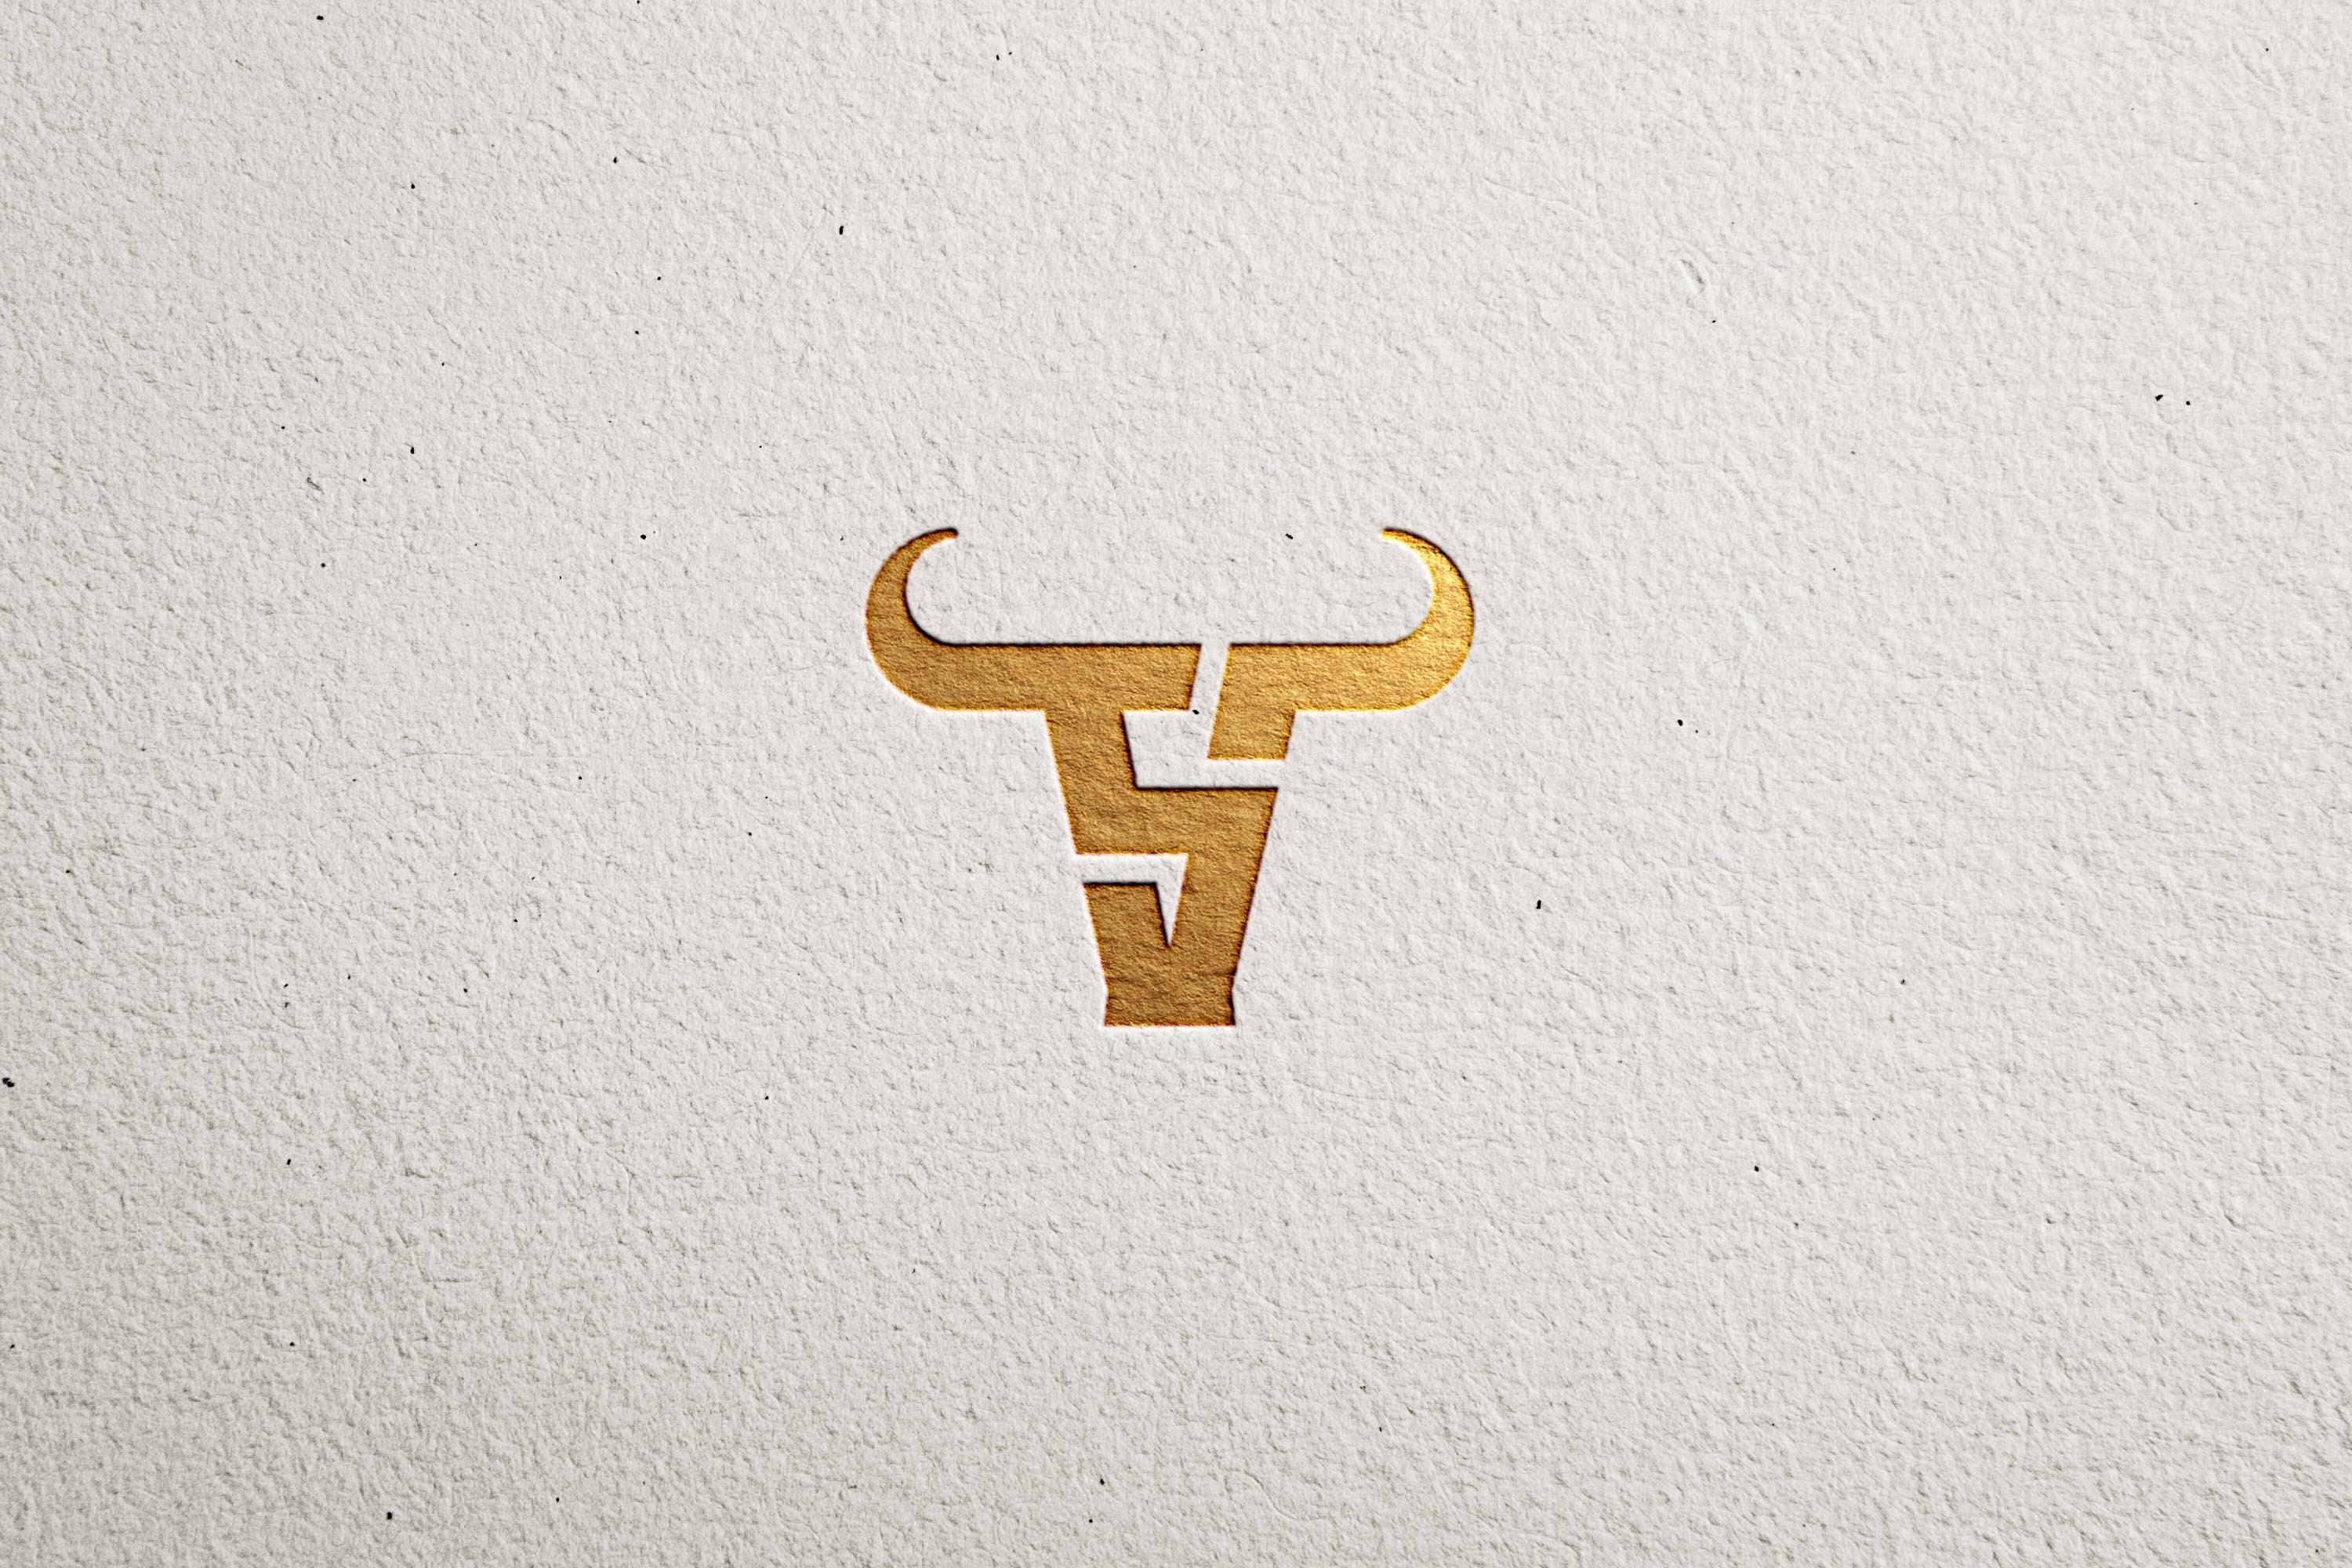 Basketball Logo design Vector - MasterBundles